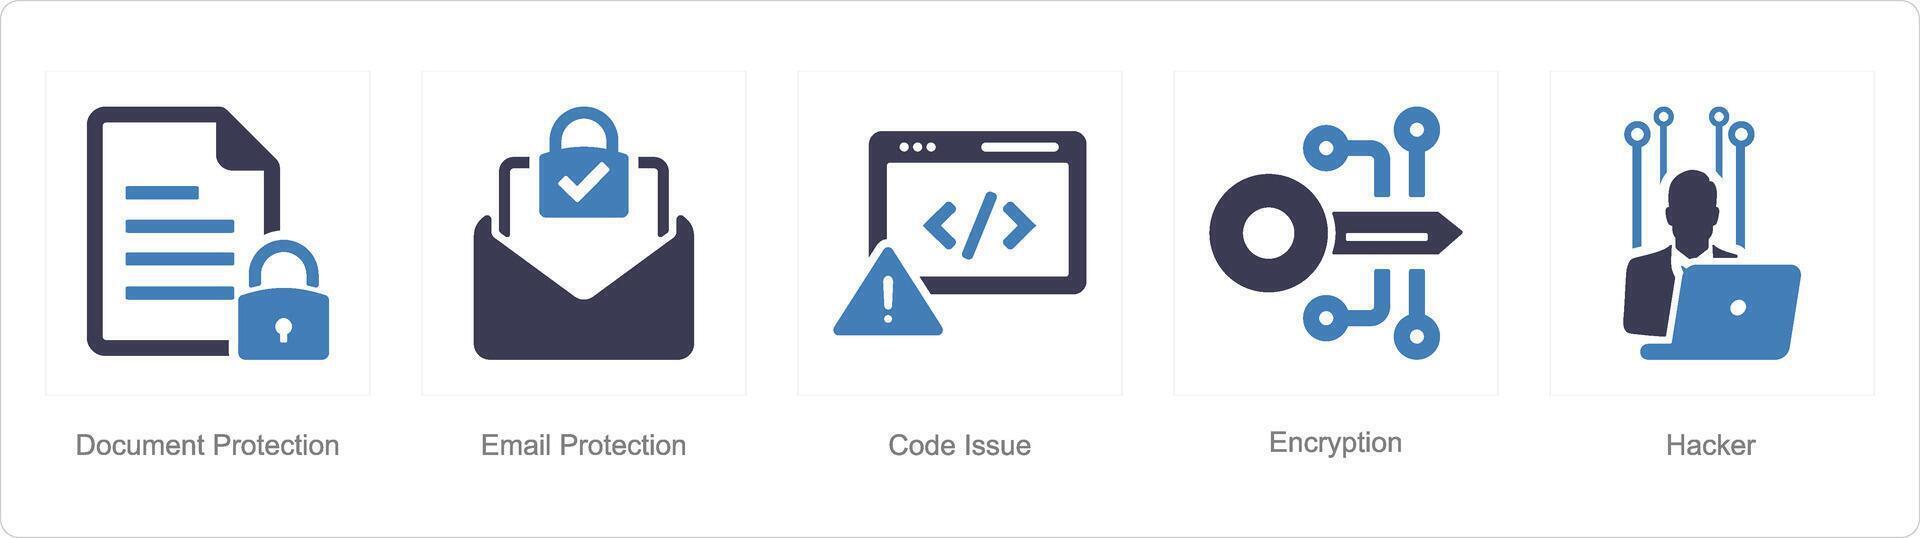 en uppsättning av 5 cyber säkerhet ikoner som dokumentera skydd, e-post skydd, koda problem vektor